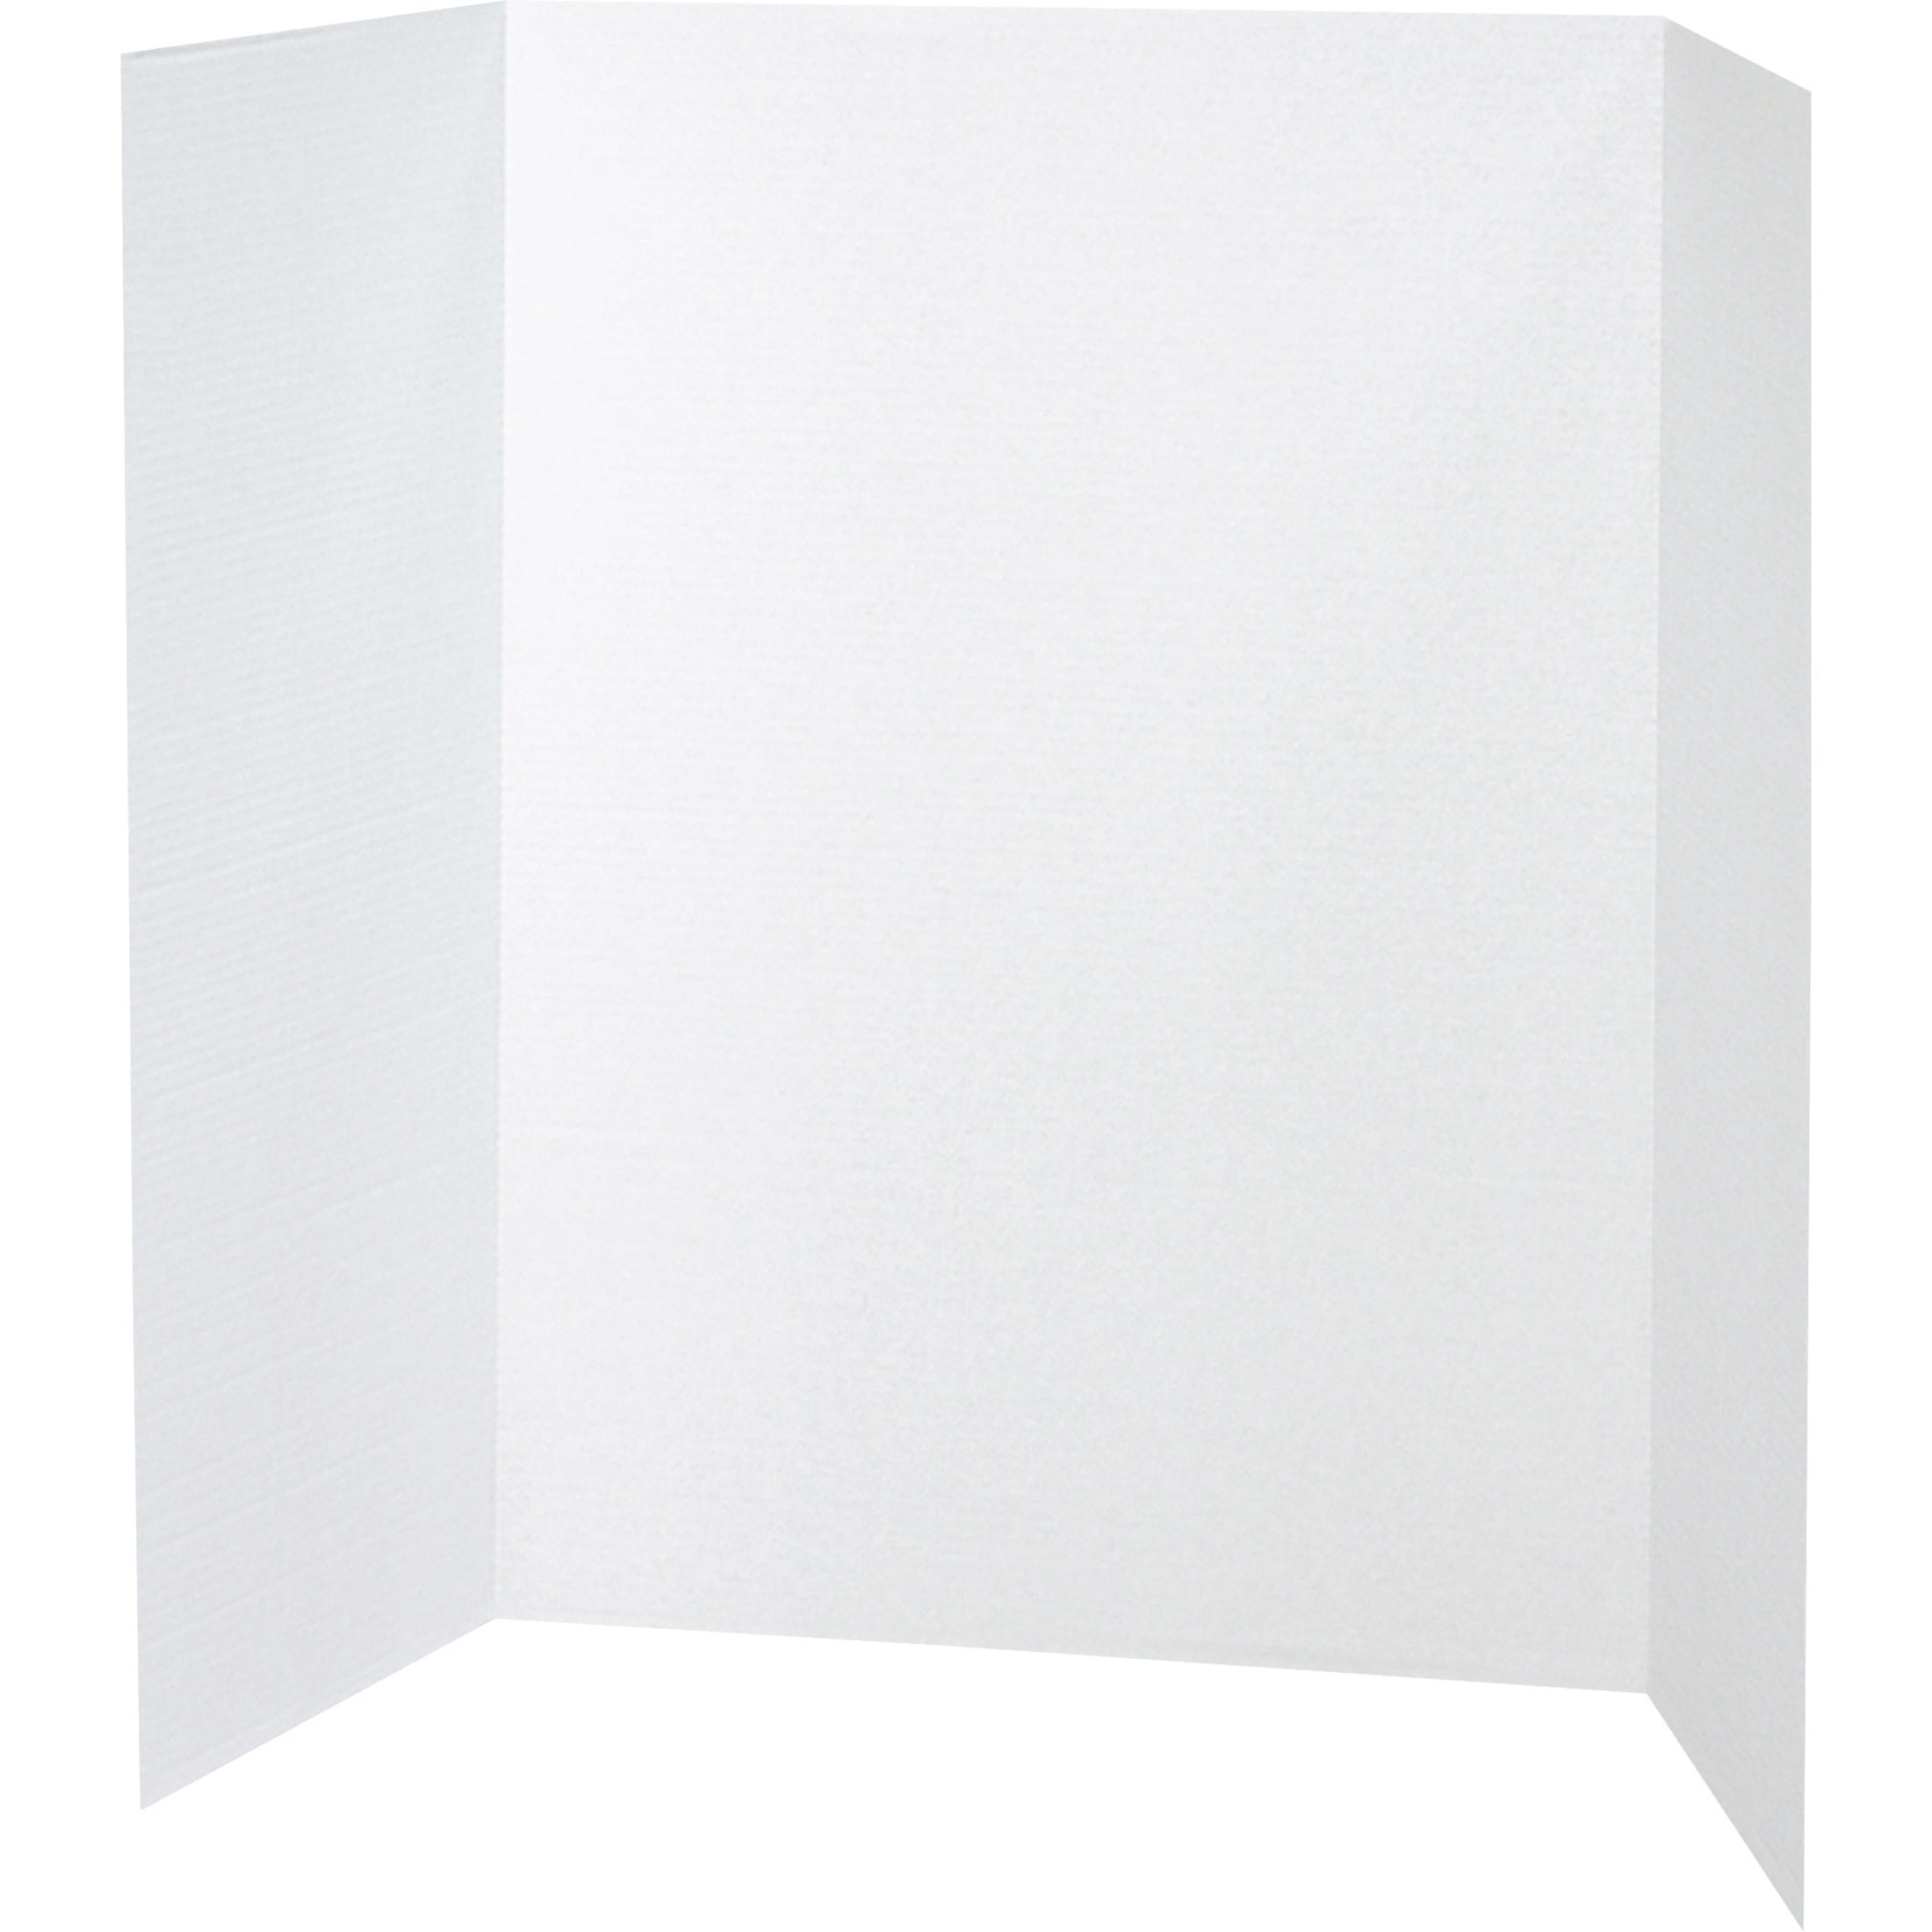 White Tri-Fold Presentation Foam Board - ROY26795